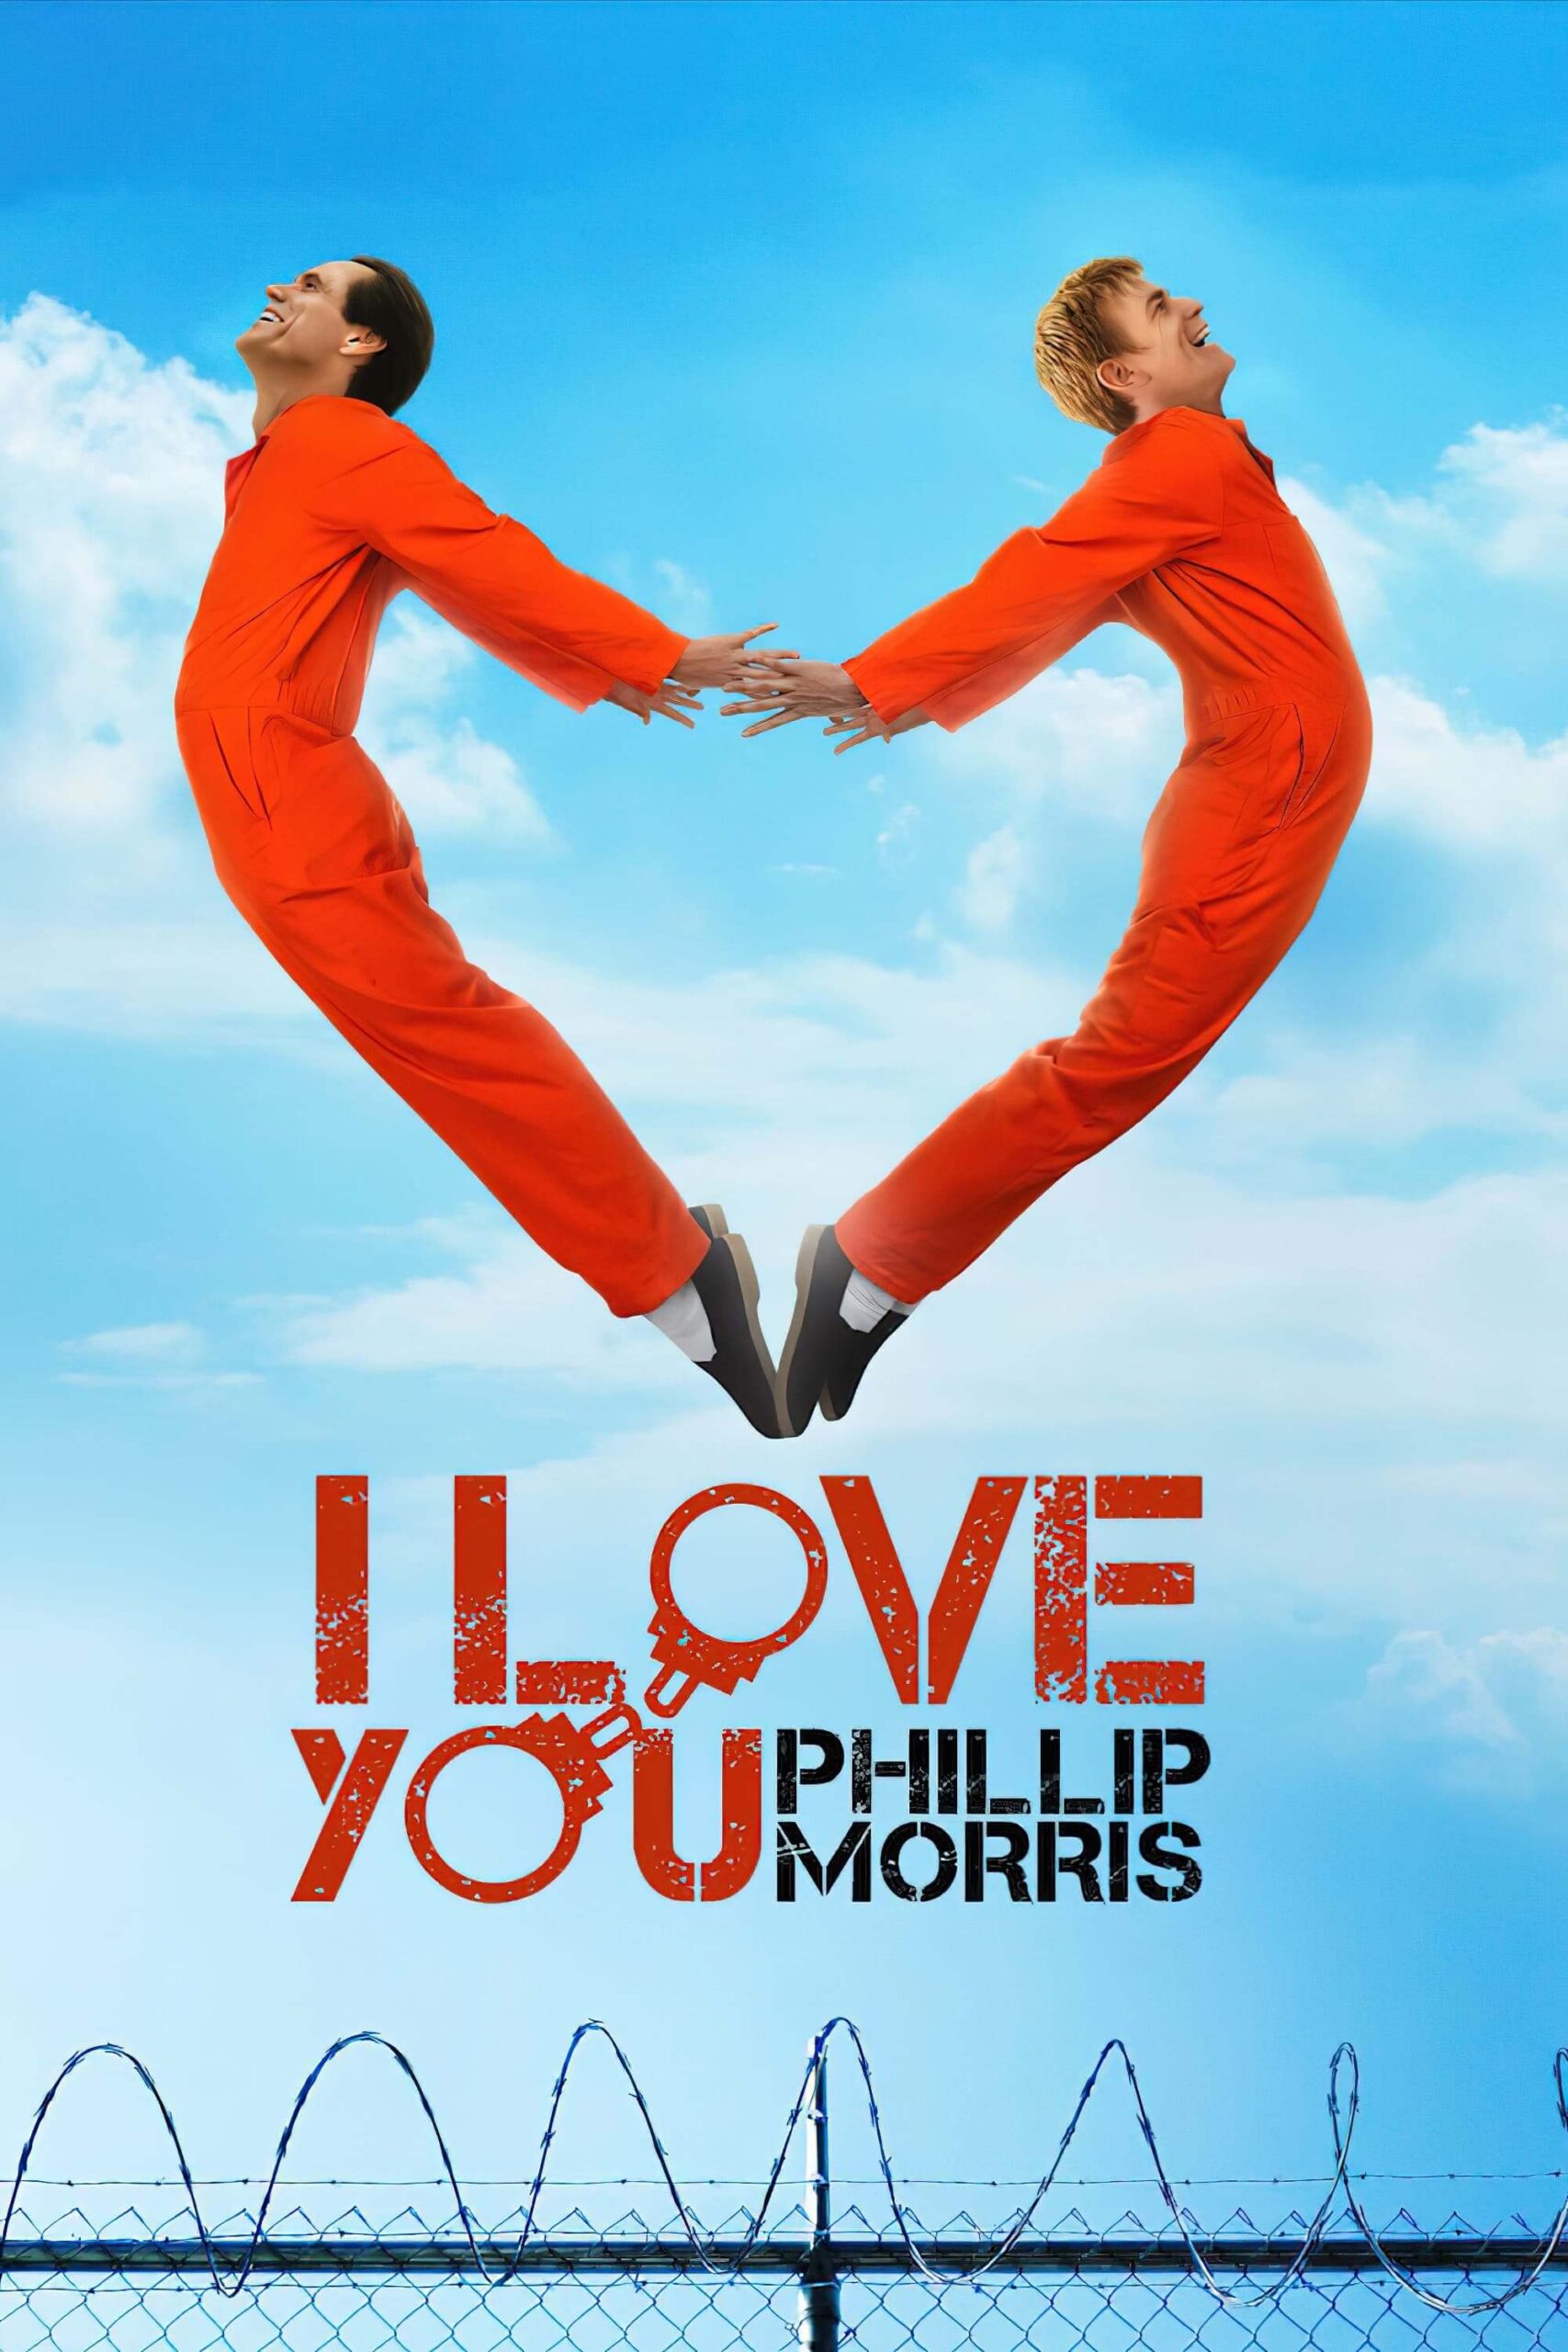 دوستت دارم فیلیپ موریس (I Love You Phillip Morris)